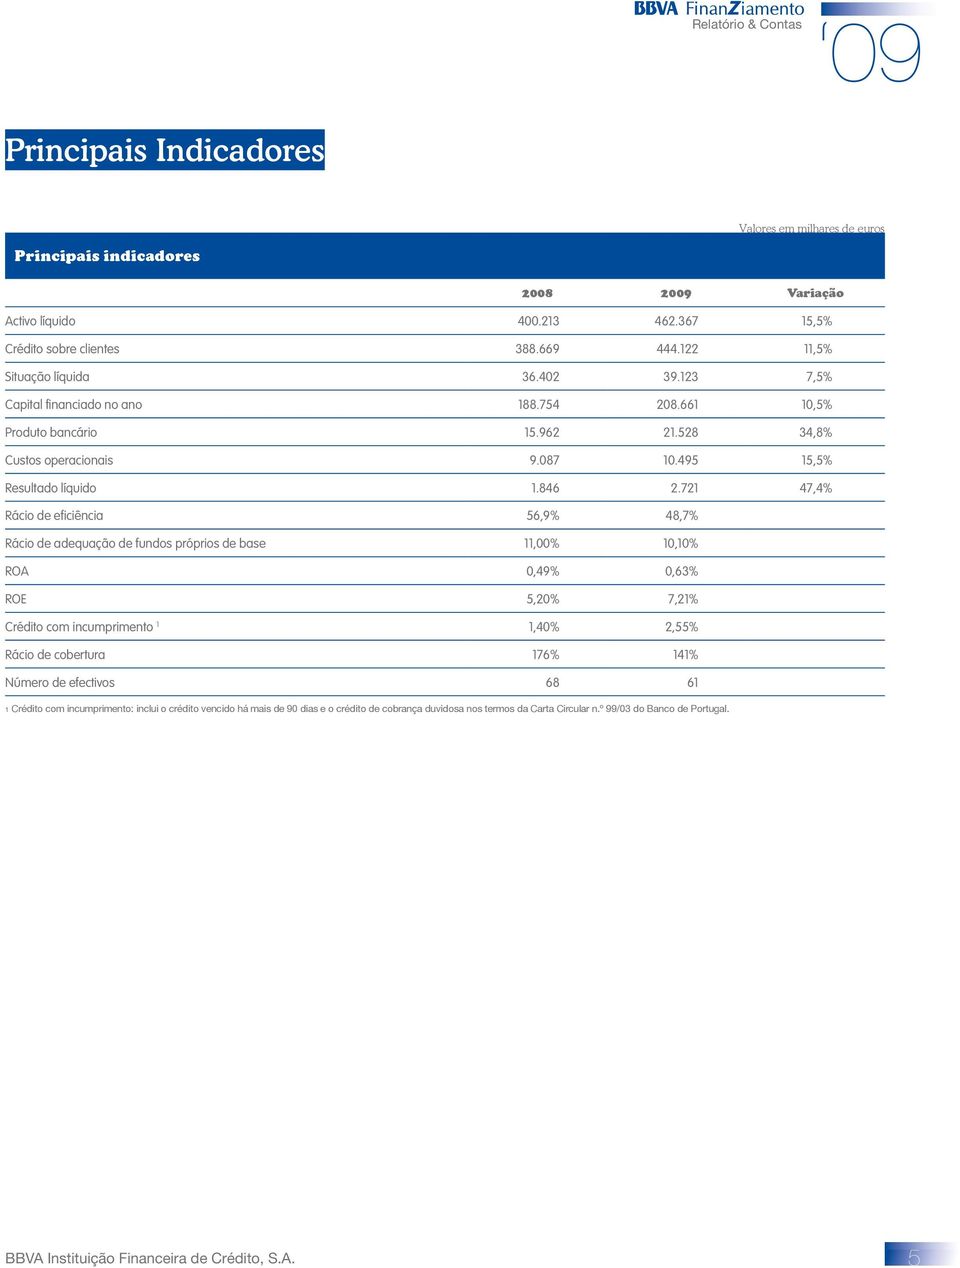 721 47,4% Rácio de eficiência 56,9% 48,7% Rácio de adequação de fundos próprios de base 11,00% 10,10% ROA 0,49% 0,63% ROE 5,20% 7,21% Crédito com incumprimento 1 1,40% 2,55% Rácio de cobertura